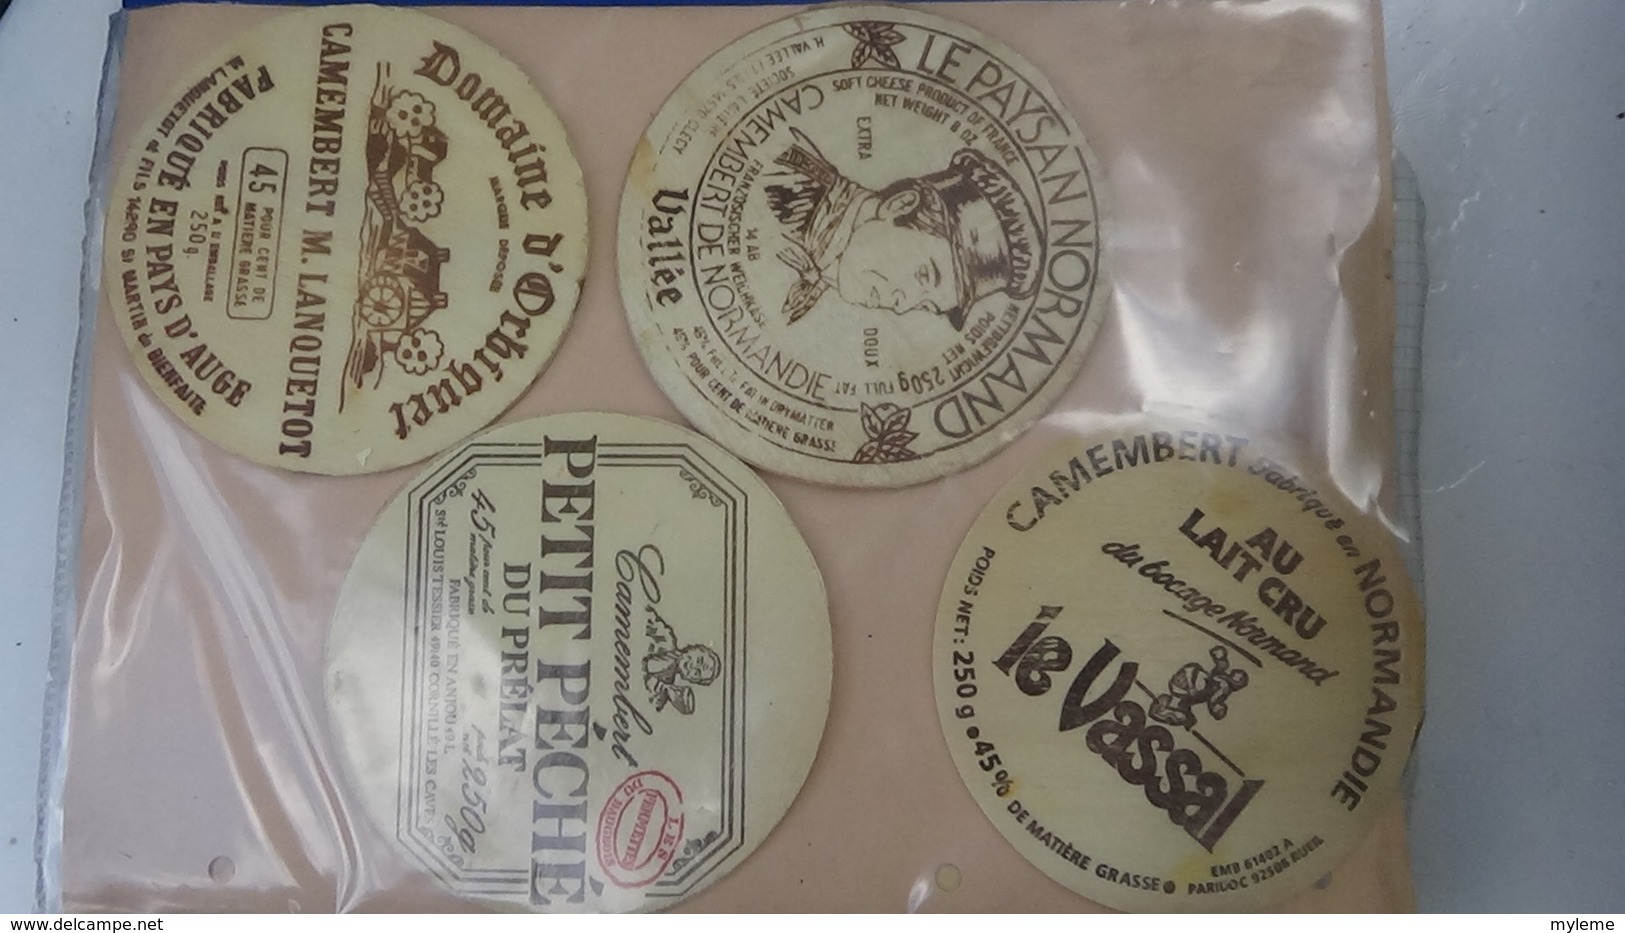 Grosse collection de couvercles et étiquettes (77 dans ce classeur) de fromages Français.4/10 Voir commentaires !!!